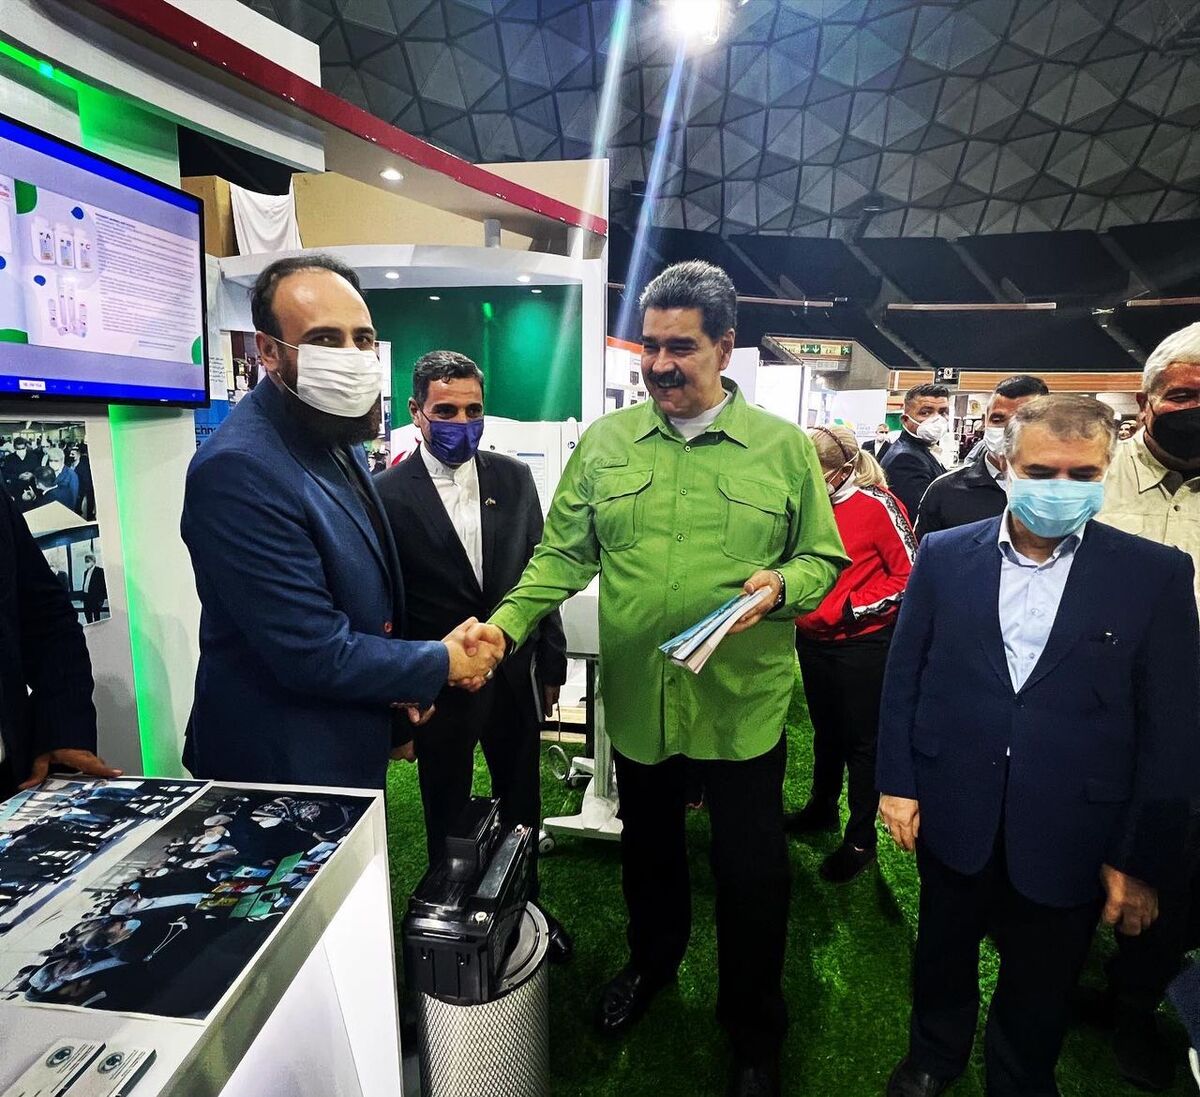 ۱۸ شرکت پارک فناوری پردیس در نمایشگاه محصولات فناور ایرانی در ونزوئلا حضور دارند